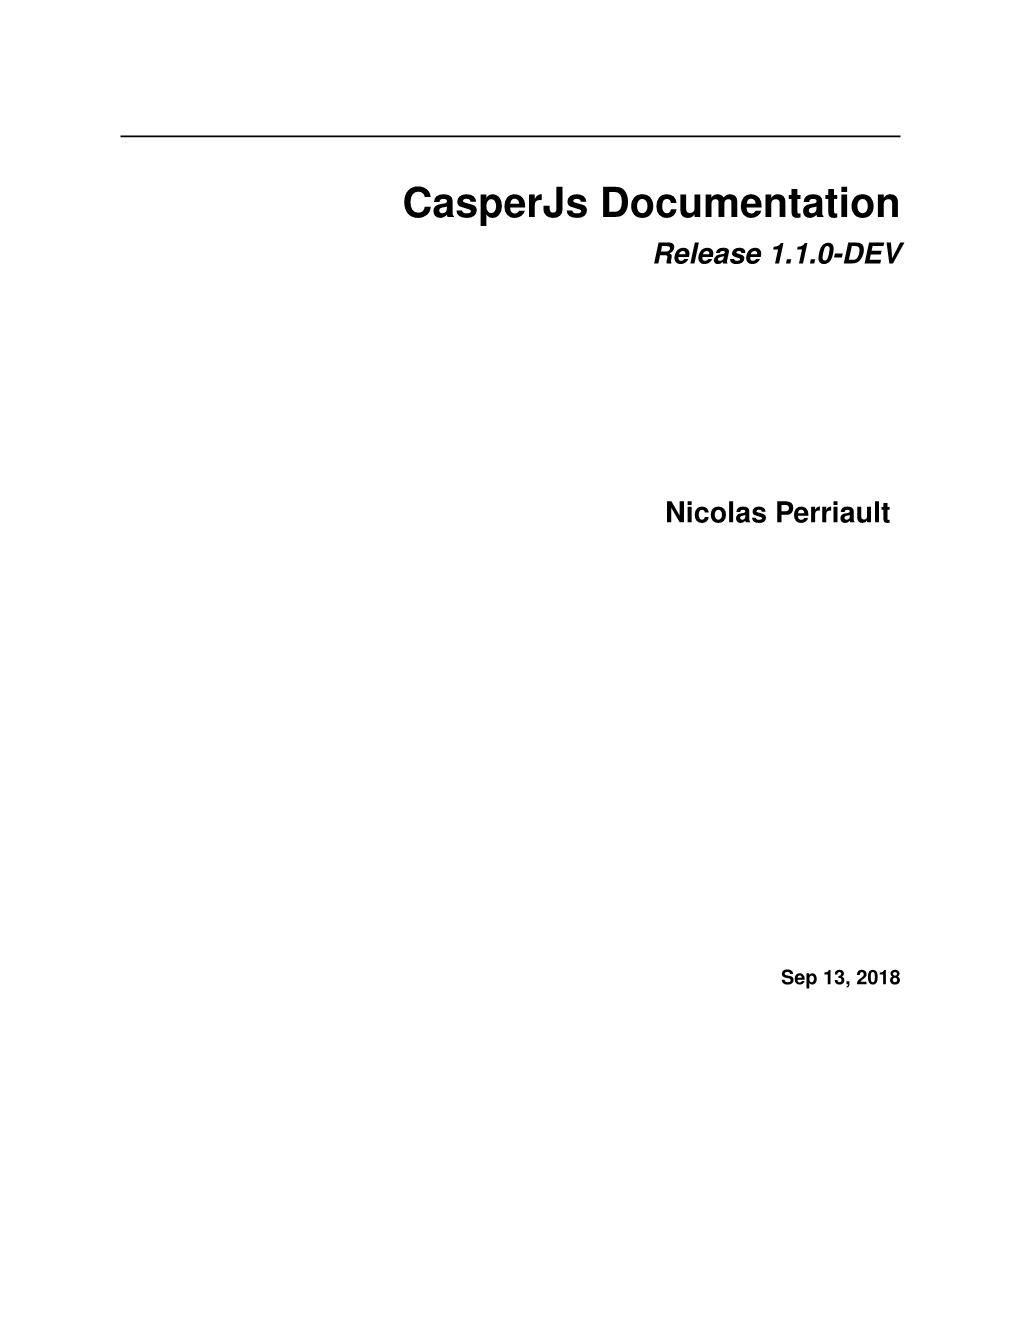 Casperjs Documentation Release 1.1.0-DEV